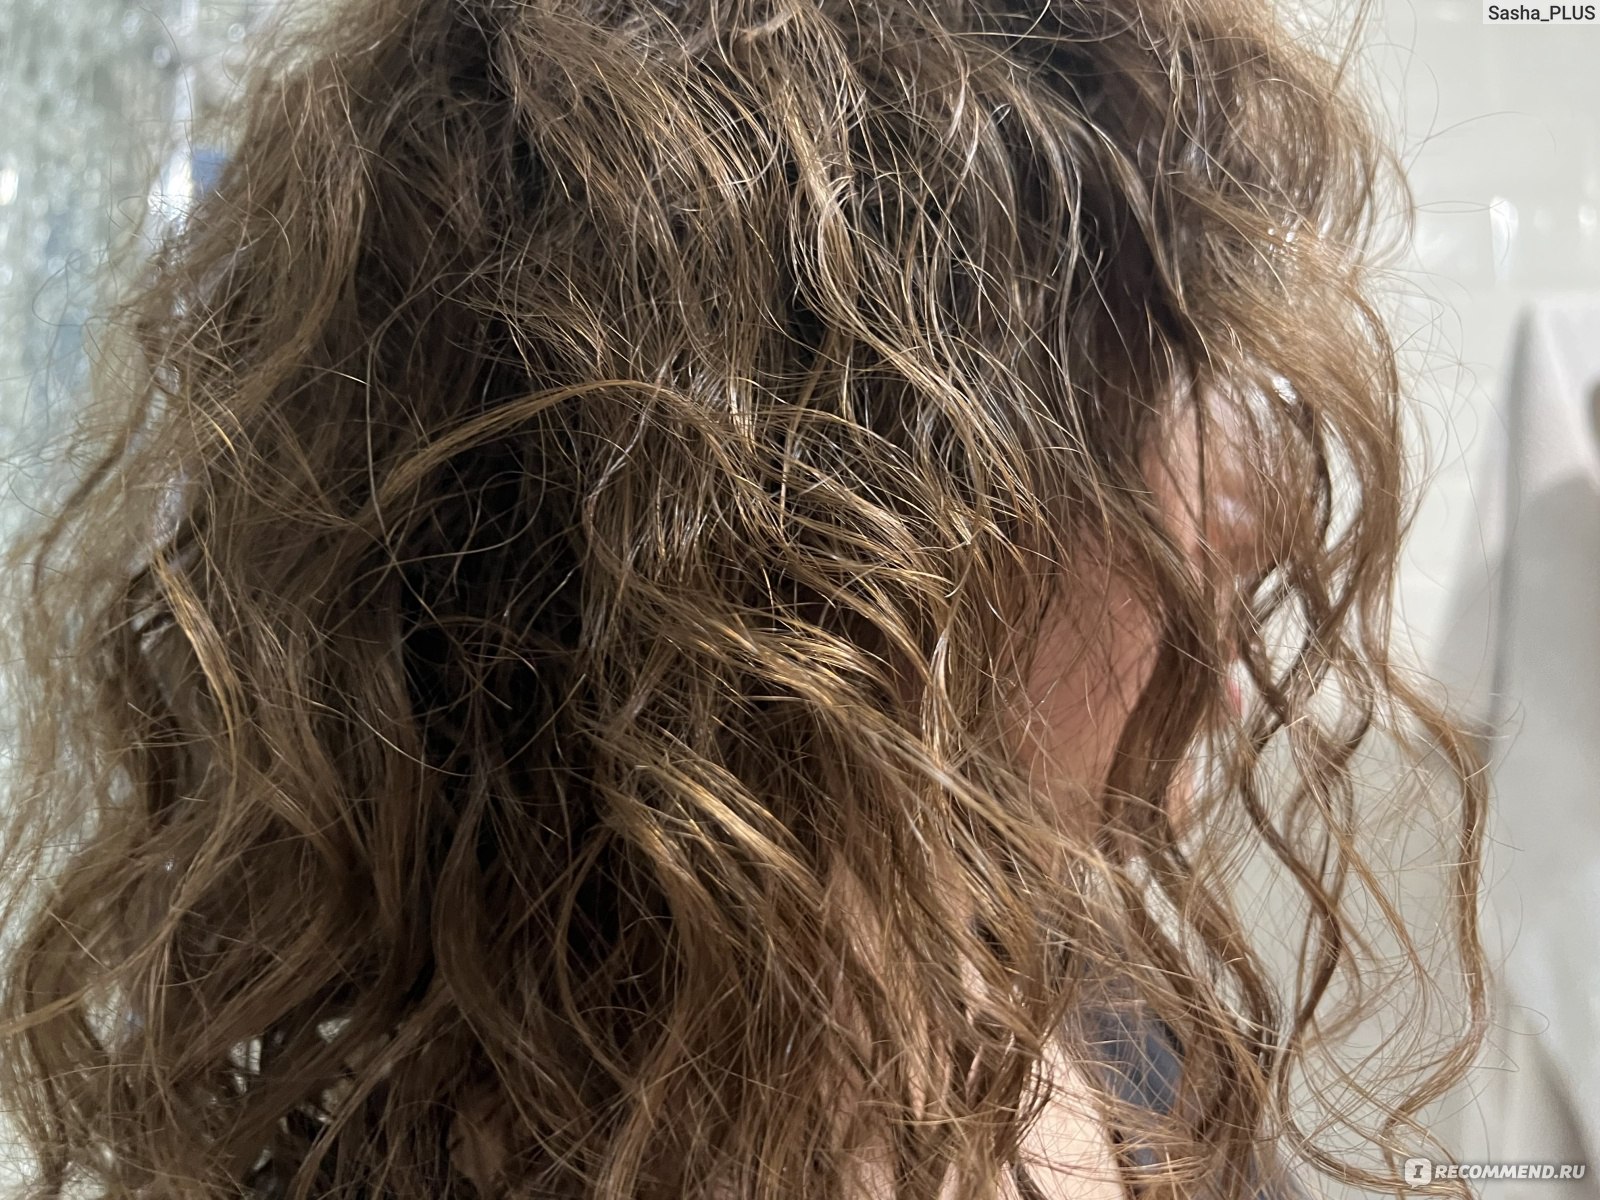 Кудрявый метод для мытья волос: как сделать кудри без плойки